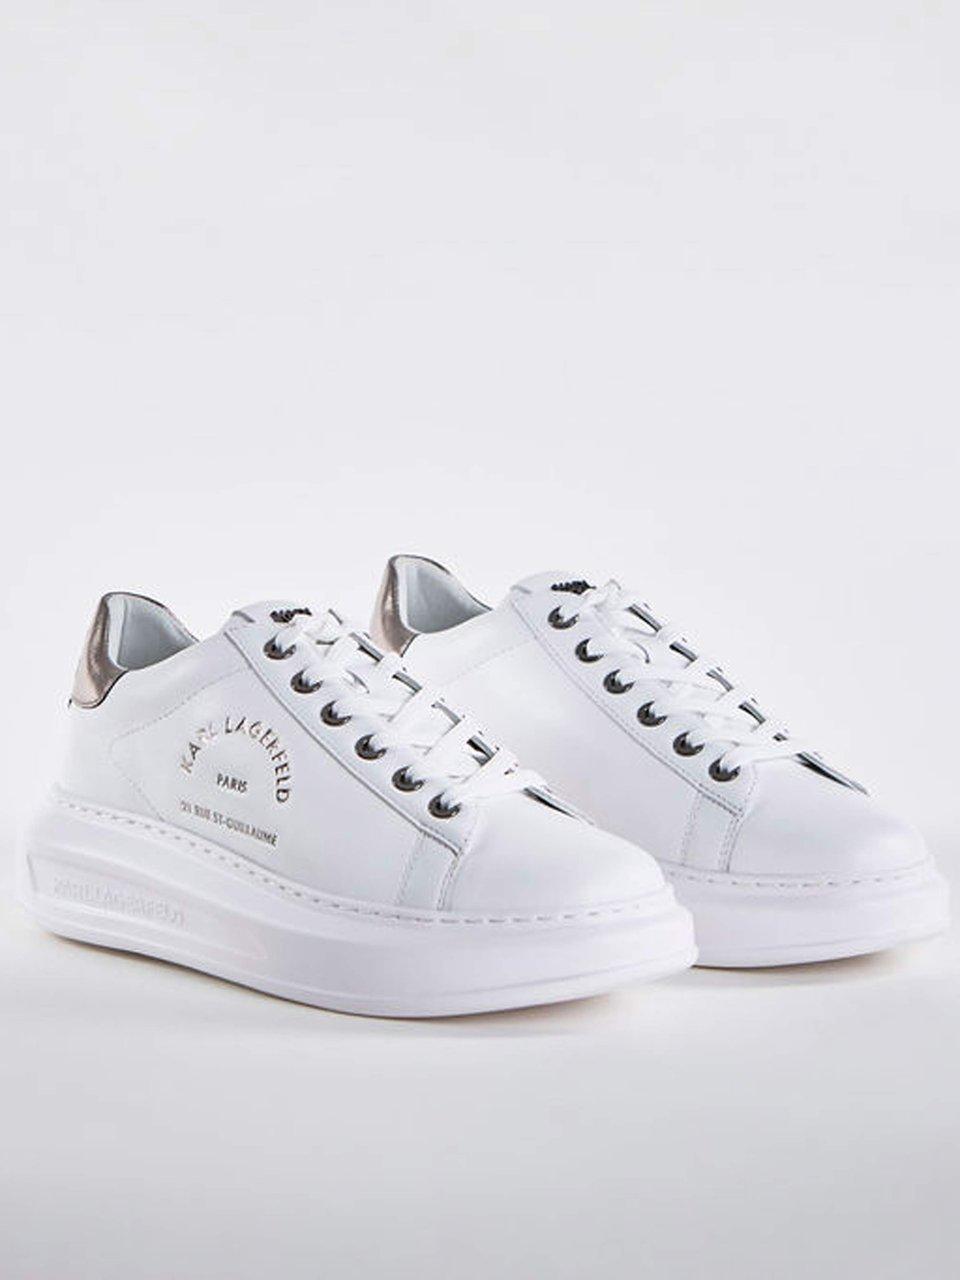 Lagerfeld - Sneakers - wit/zilverkleur